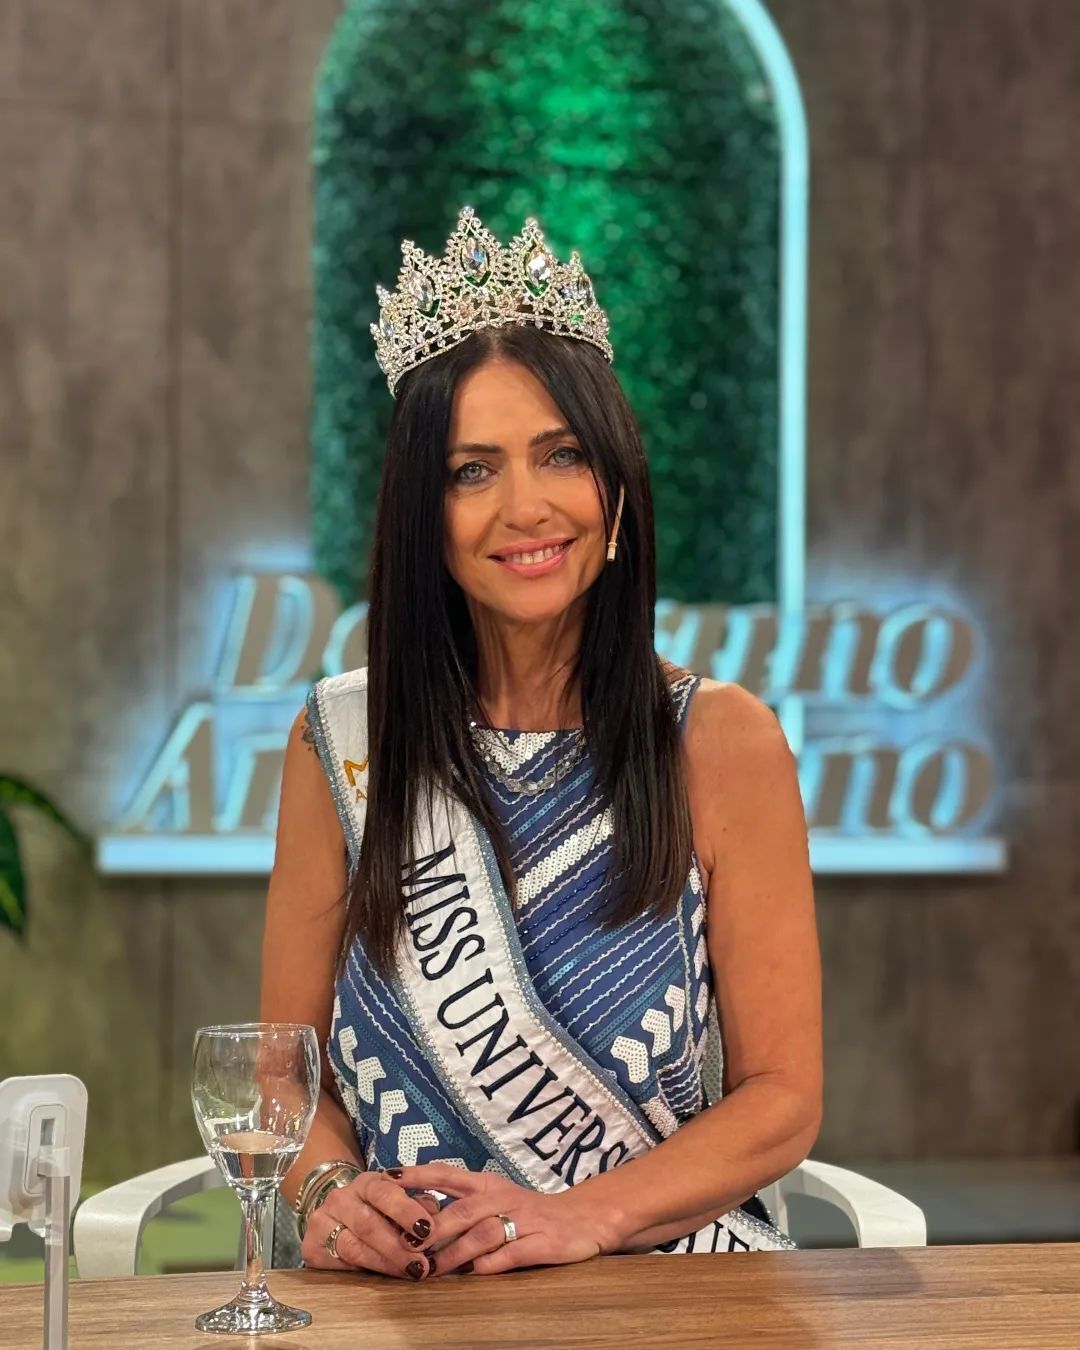 60-летняя женщина впервые в истории победила на конкурсе красоты и стала "Мисс Вселенная Буэнос-Айрес": как выглядит Алехандра Родригес